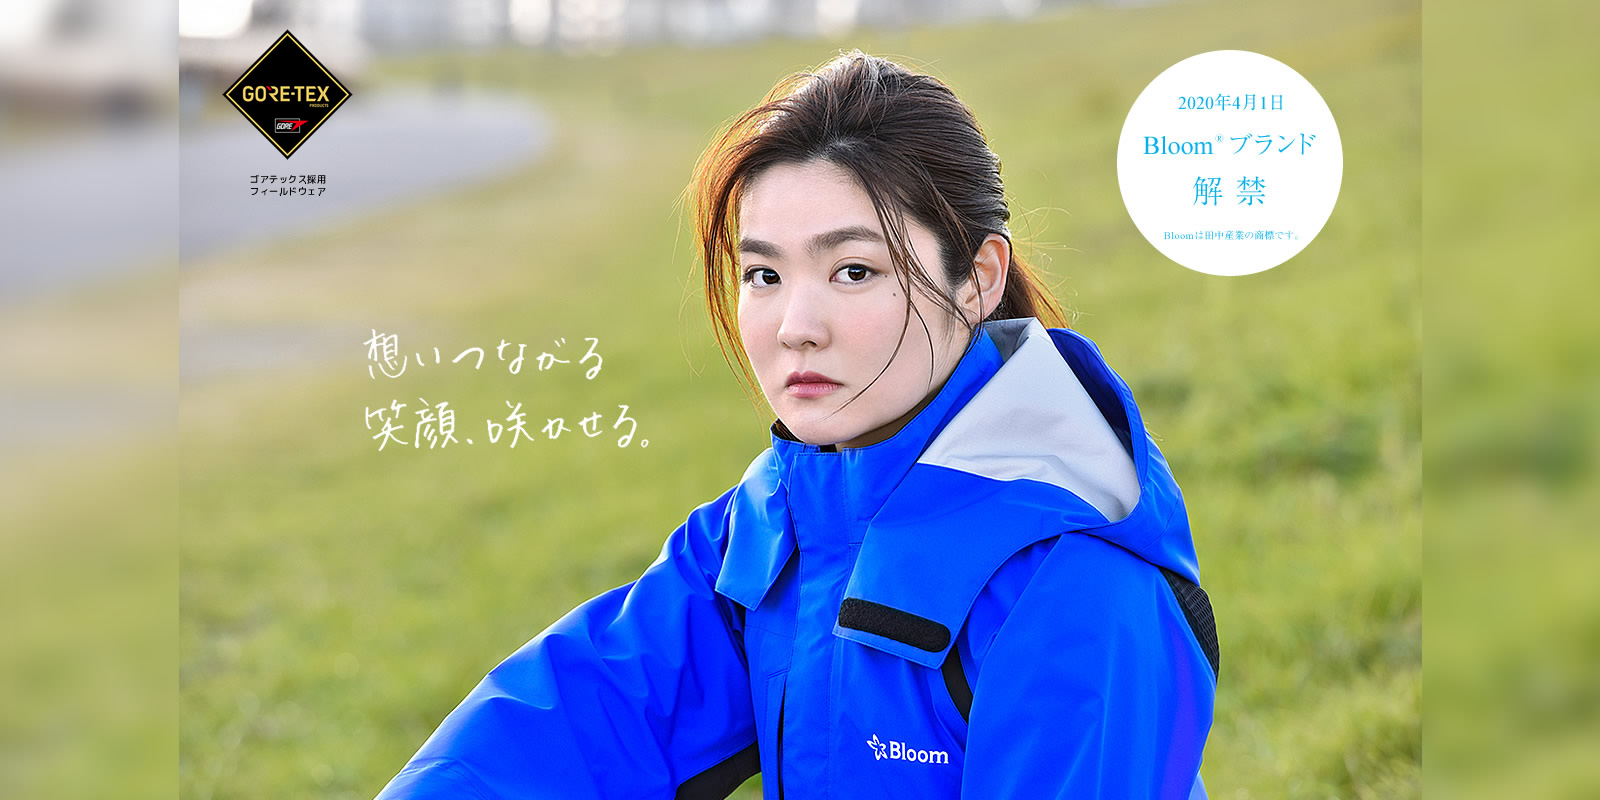 信憑 田中産業 4着セット品 ゴアテックス GORE-TEX Bloom ブルーム ジャケット パンツのセット 3カラー 5サイズ 法人 農園様限定 